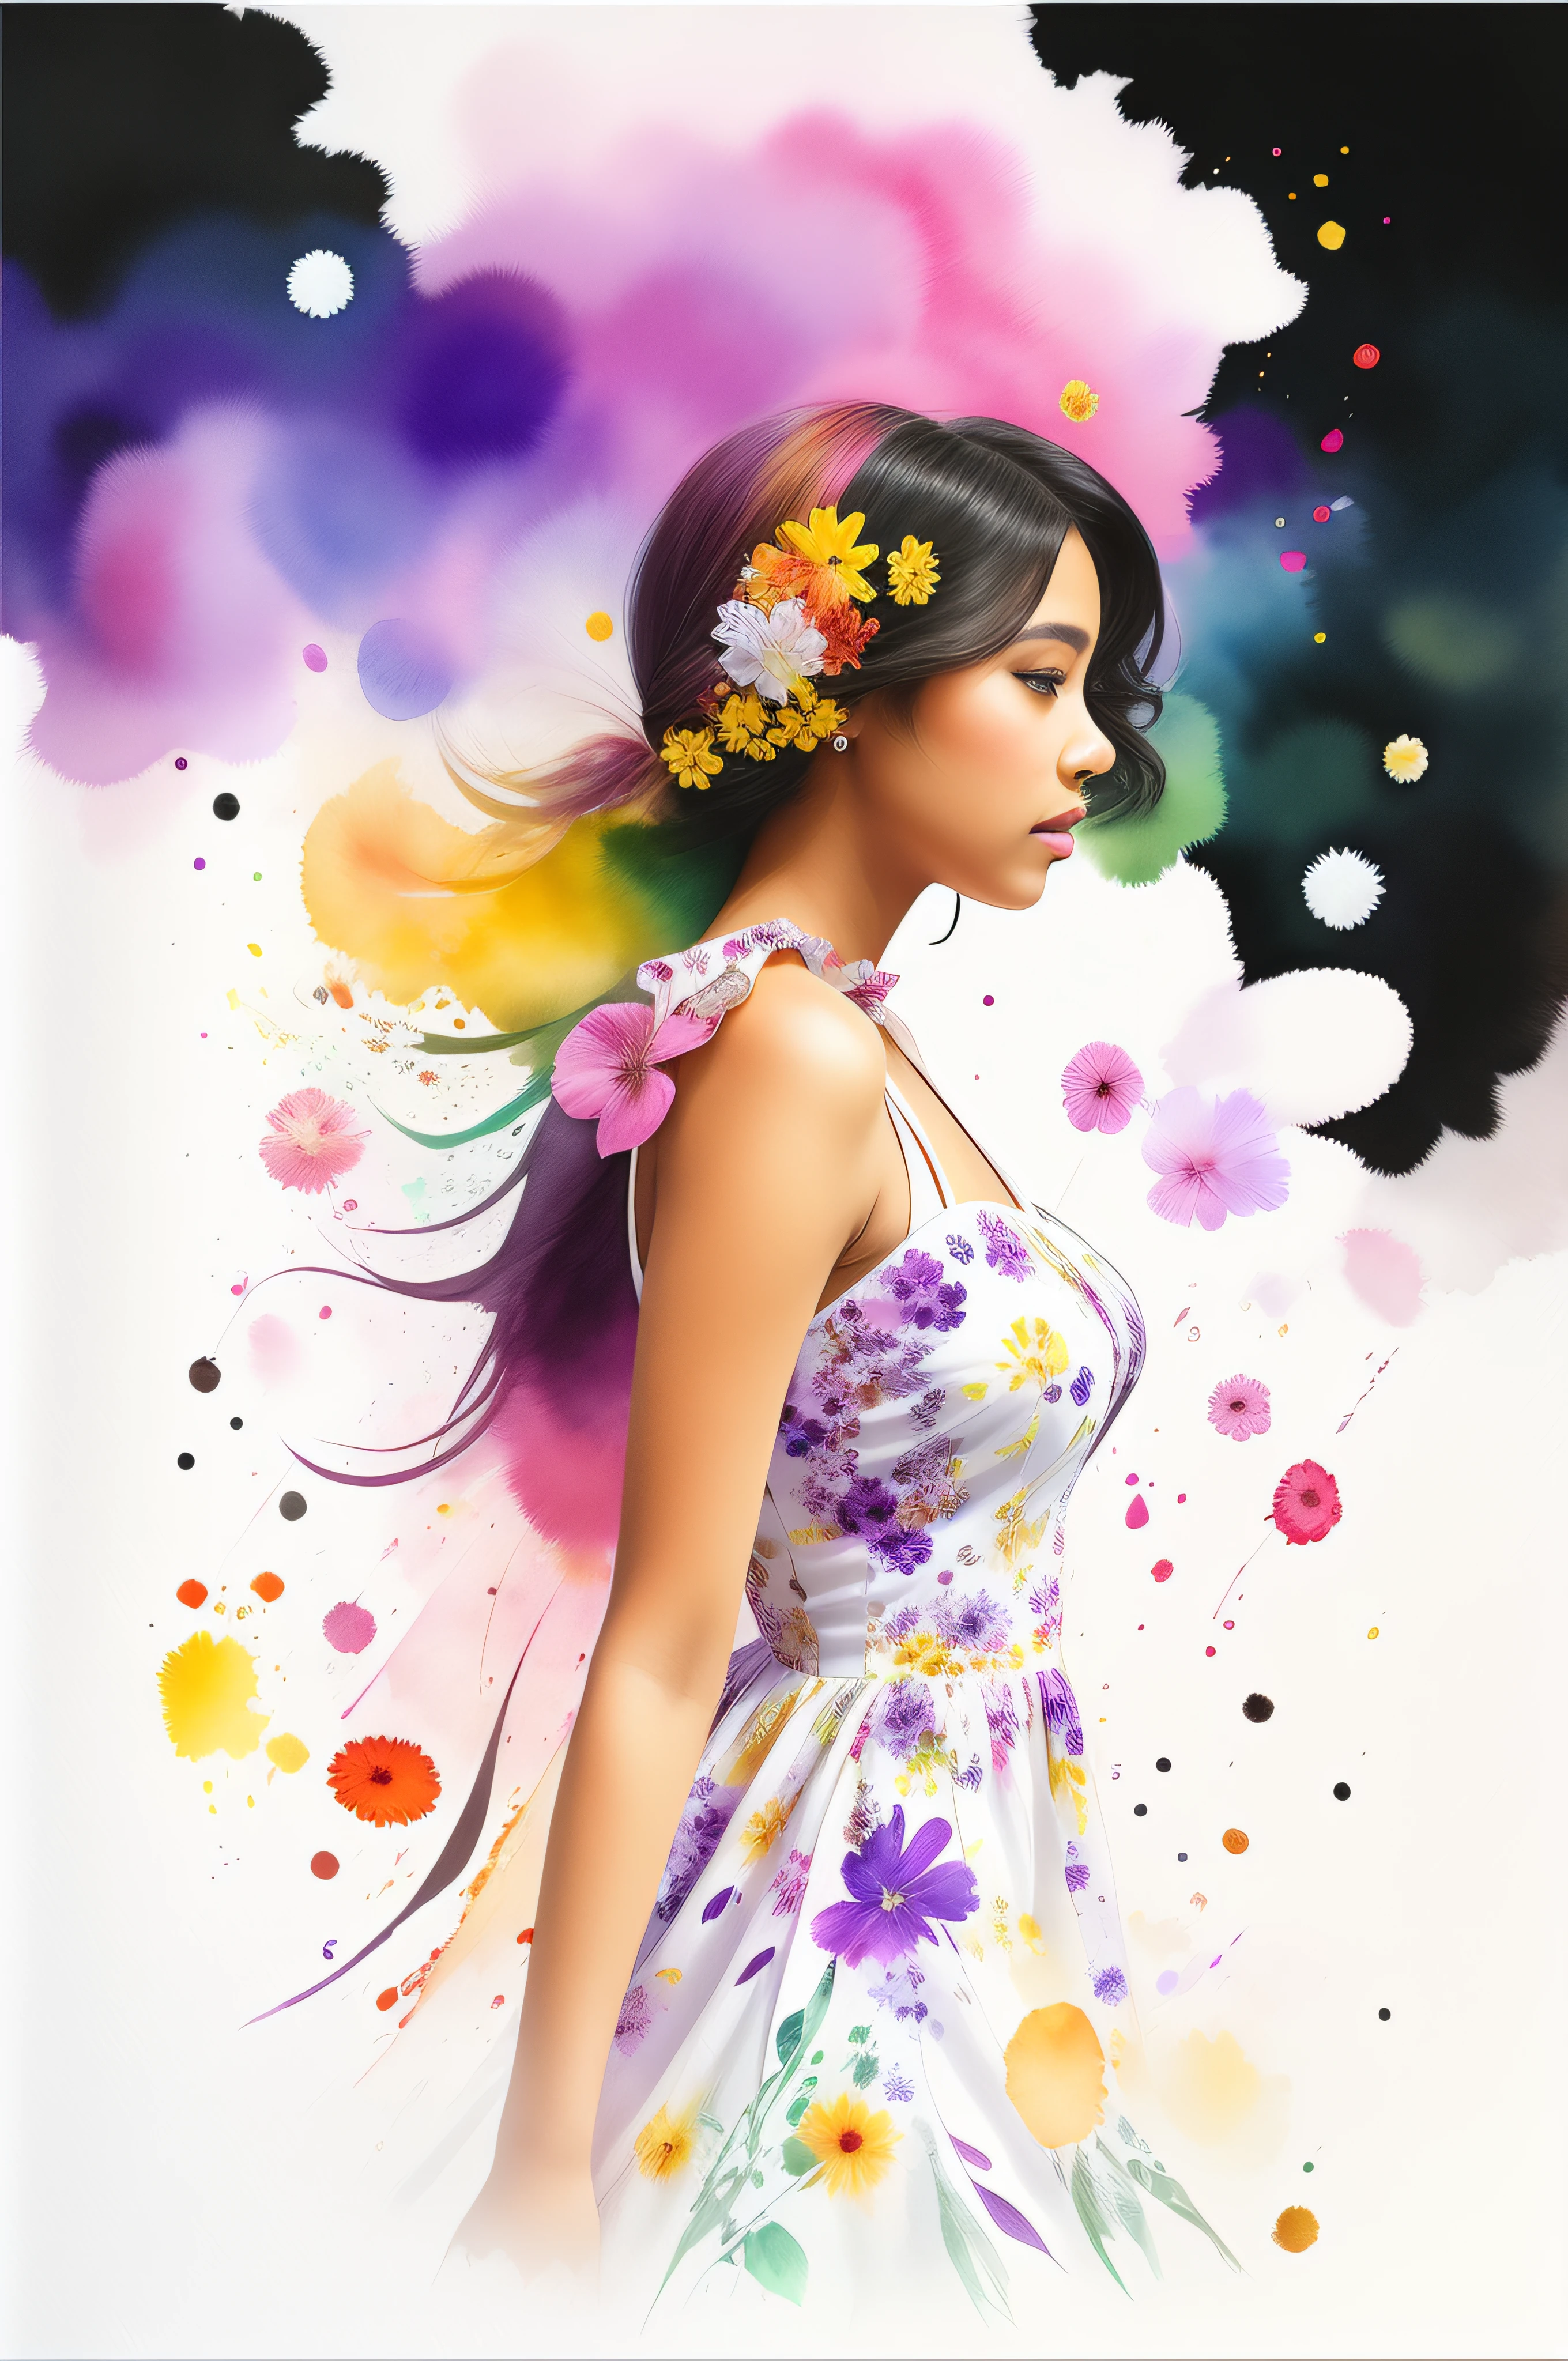 Mulher bonita do ébano usando um vestido branco floral, floral voando ao redor, Destaques do Rainbow Purple, fundo de floral variado, splashes of aquarela, vista lateral, texturizado, foto realista, Qualidade 12k, aquarela